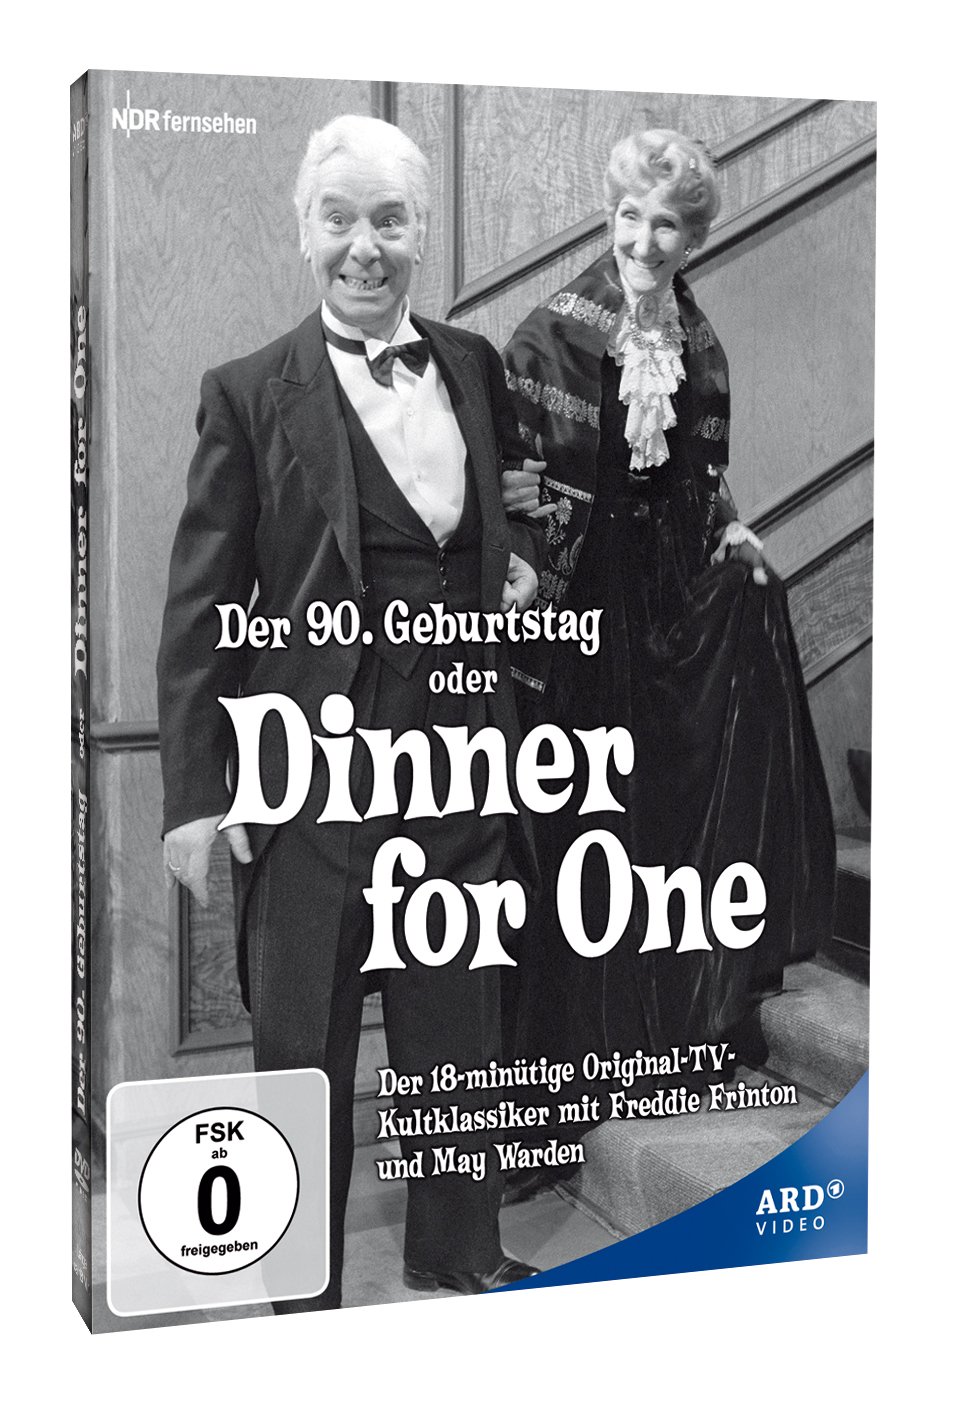 Dinner for One oder Der 90. Geburtstag